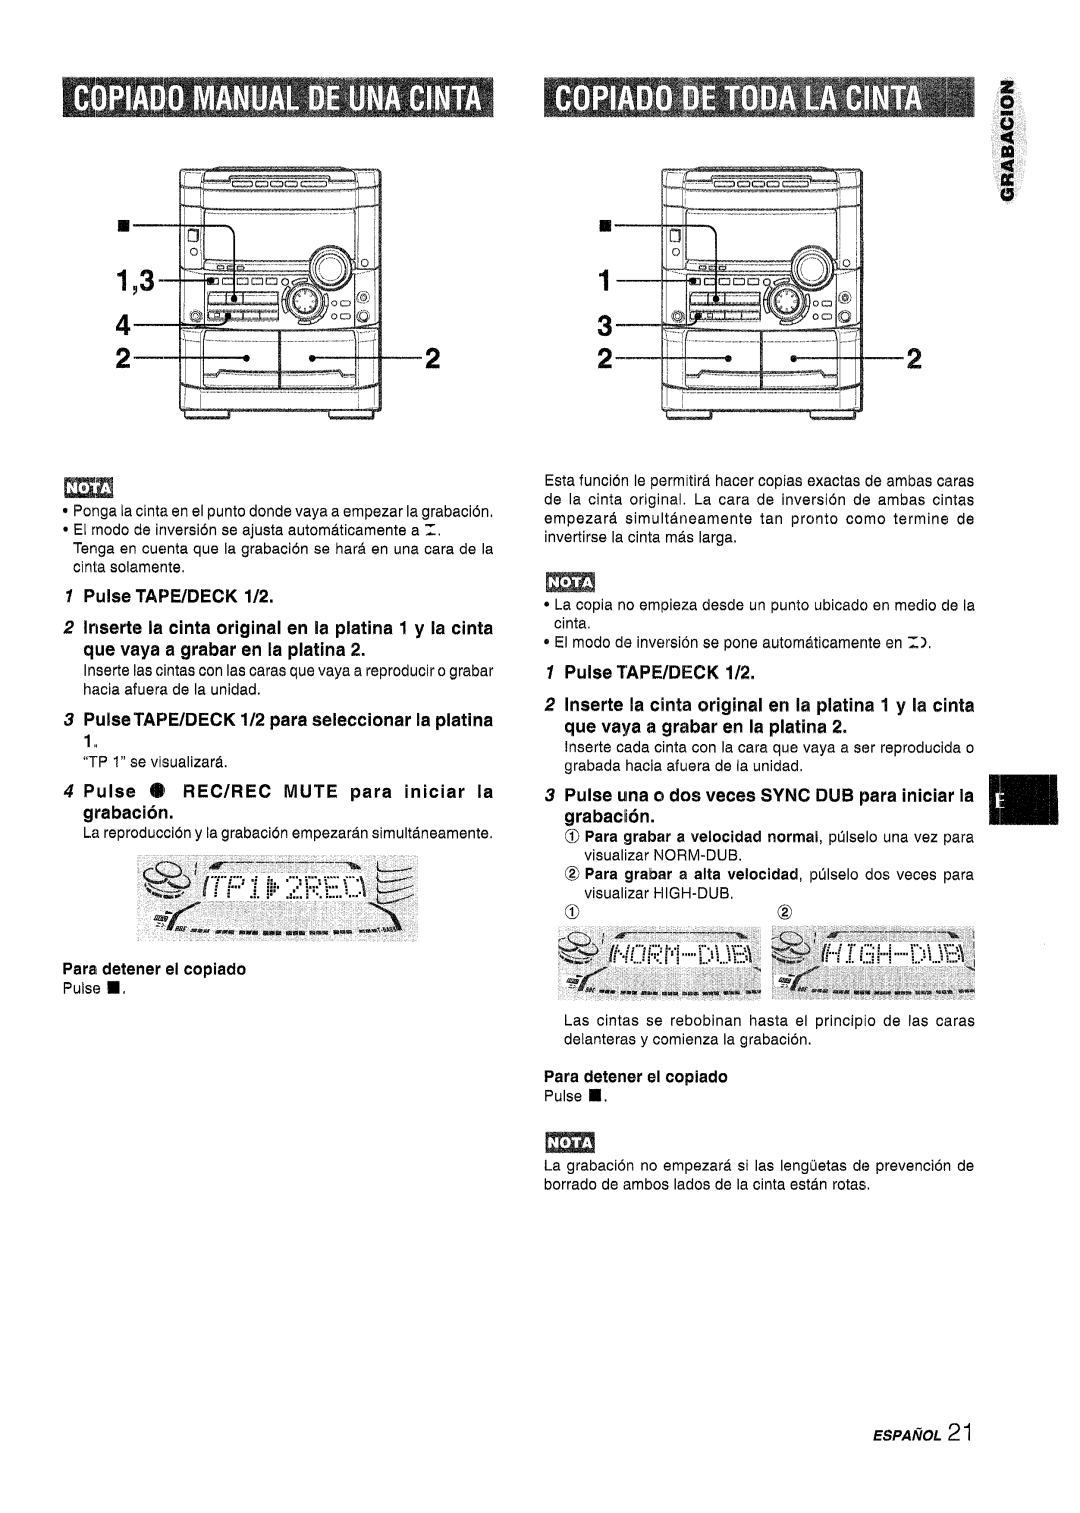 Sony NSX-A767 manual ‘i..,,, .,,,-+--II, We vaya a grabar en la platina, Pulse TAPE/DECK 1/2 para seleccionar la platina 